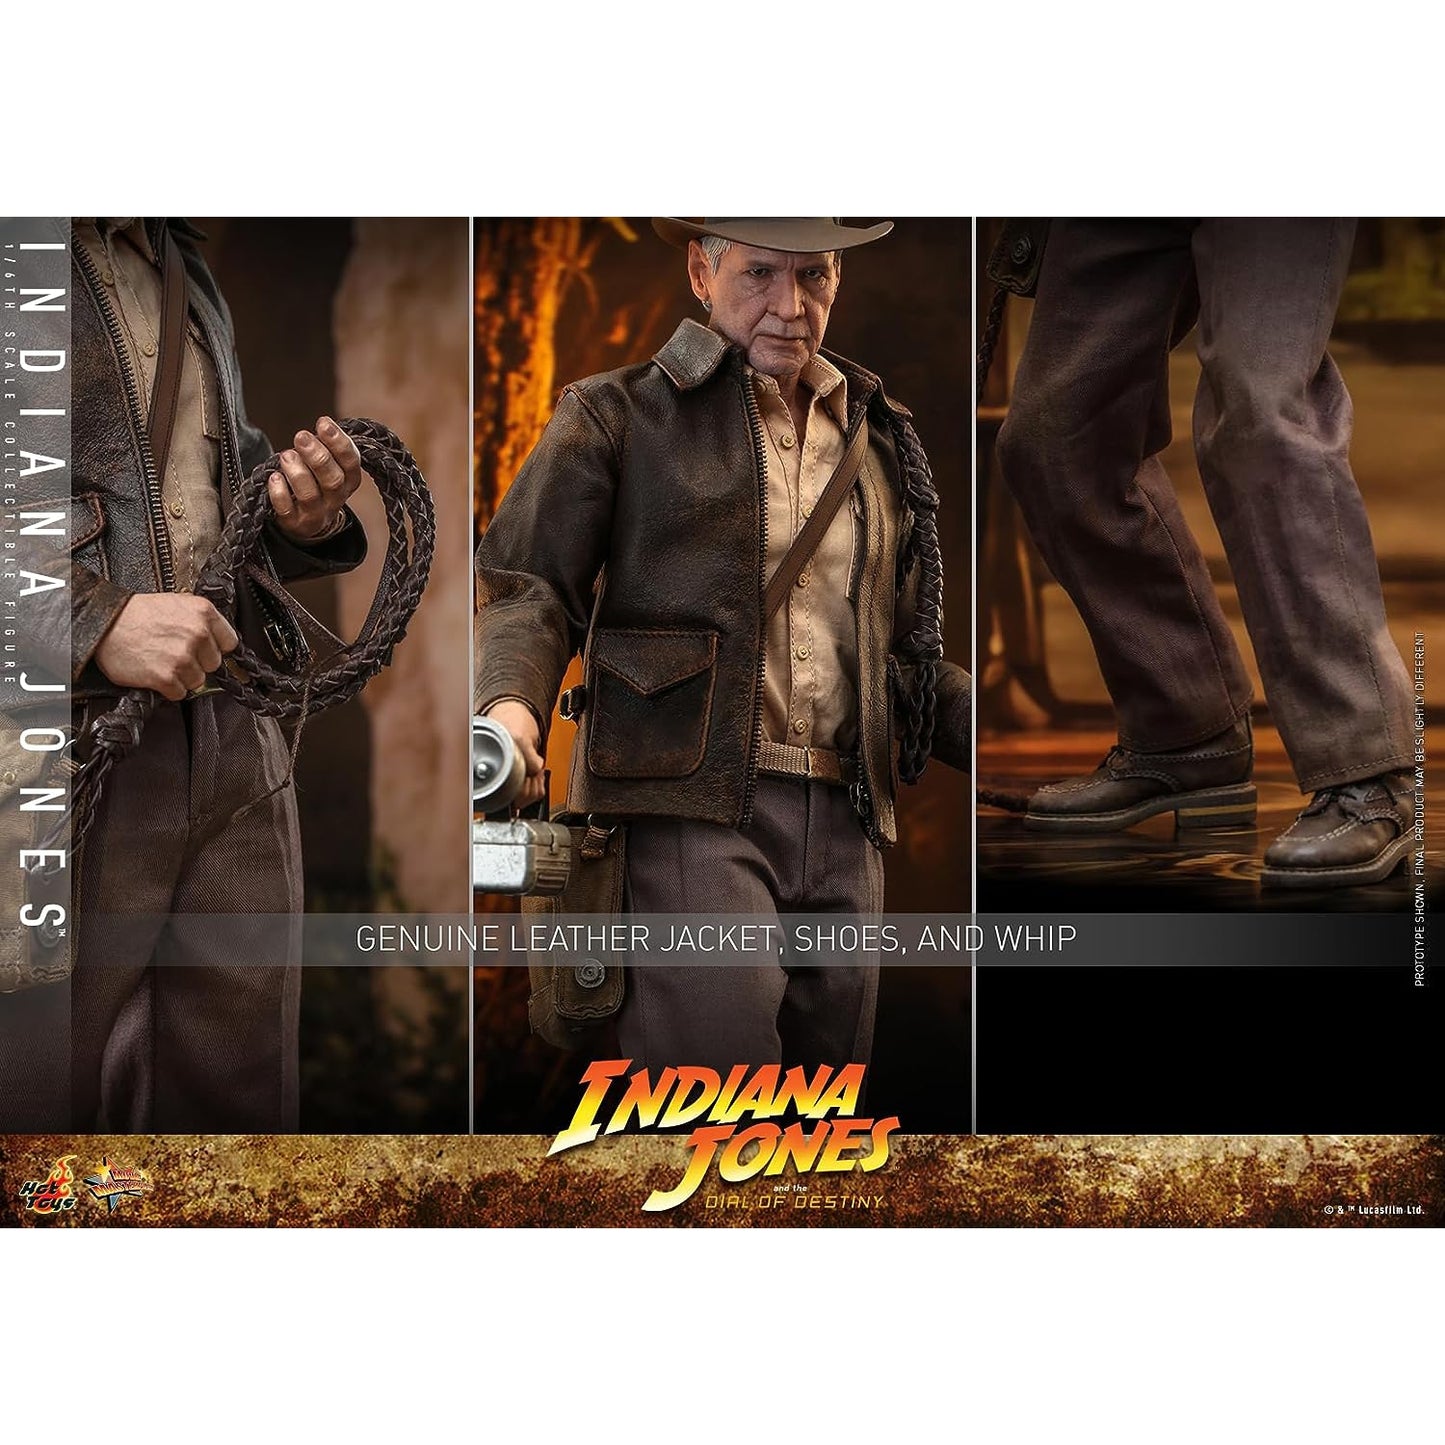 Obra-prima do cinema Indiana Jones e o Disco do Destino Figura em Escala 1/6 do Indiana Jones Japão NOVO